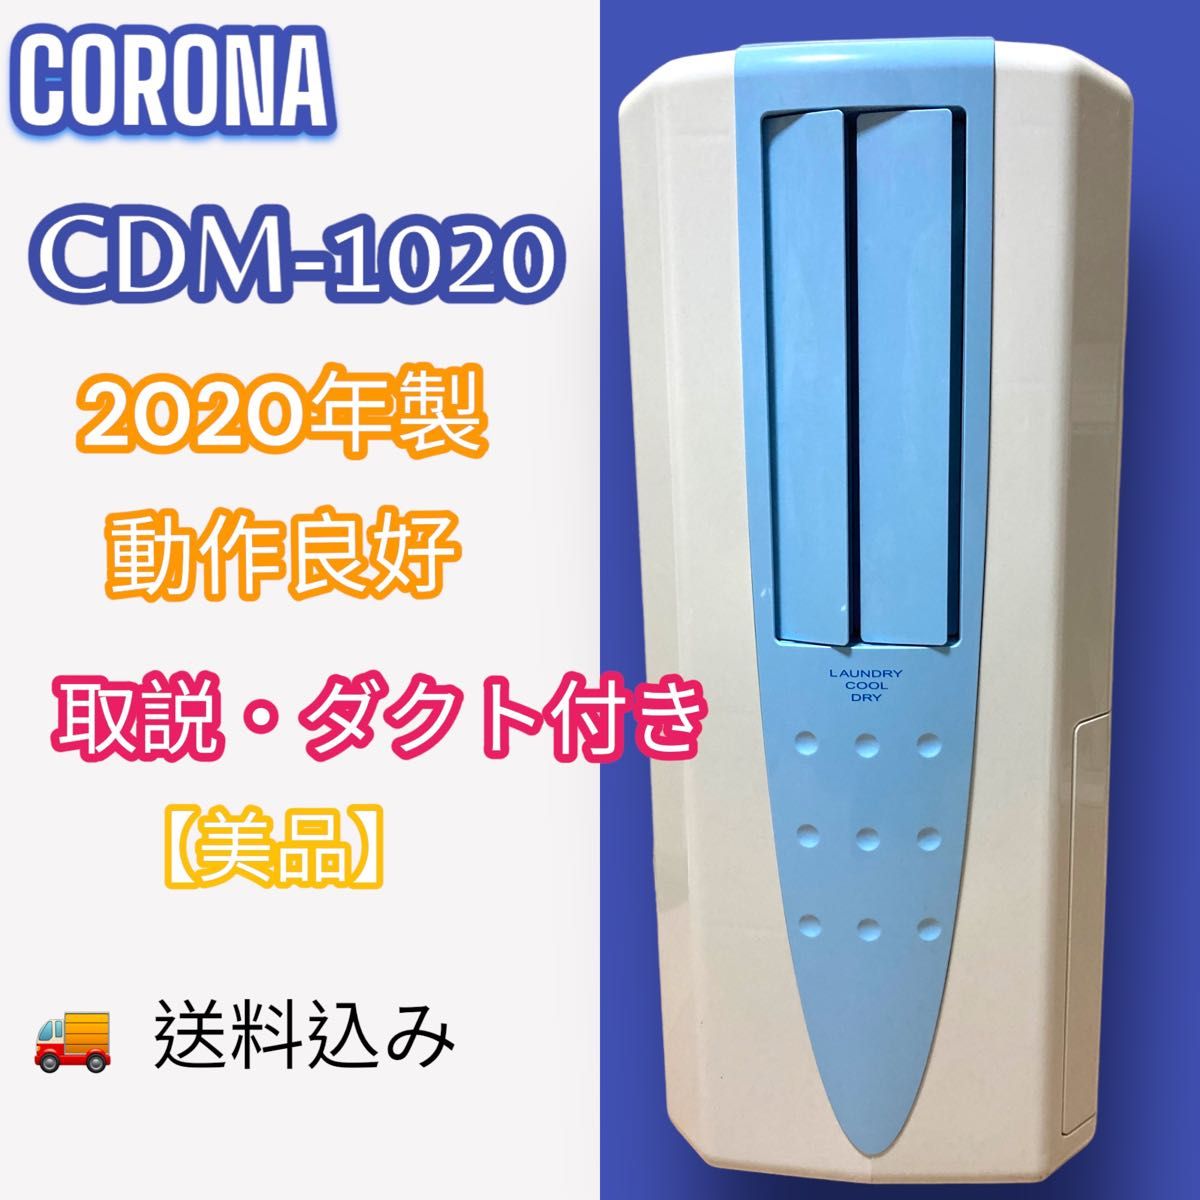 CORONA コロナ 【美品】CDM-1020 2020年製 動作良好 どこでもクーラー